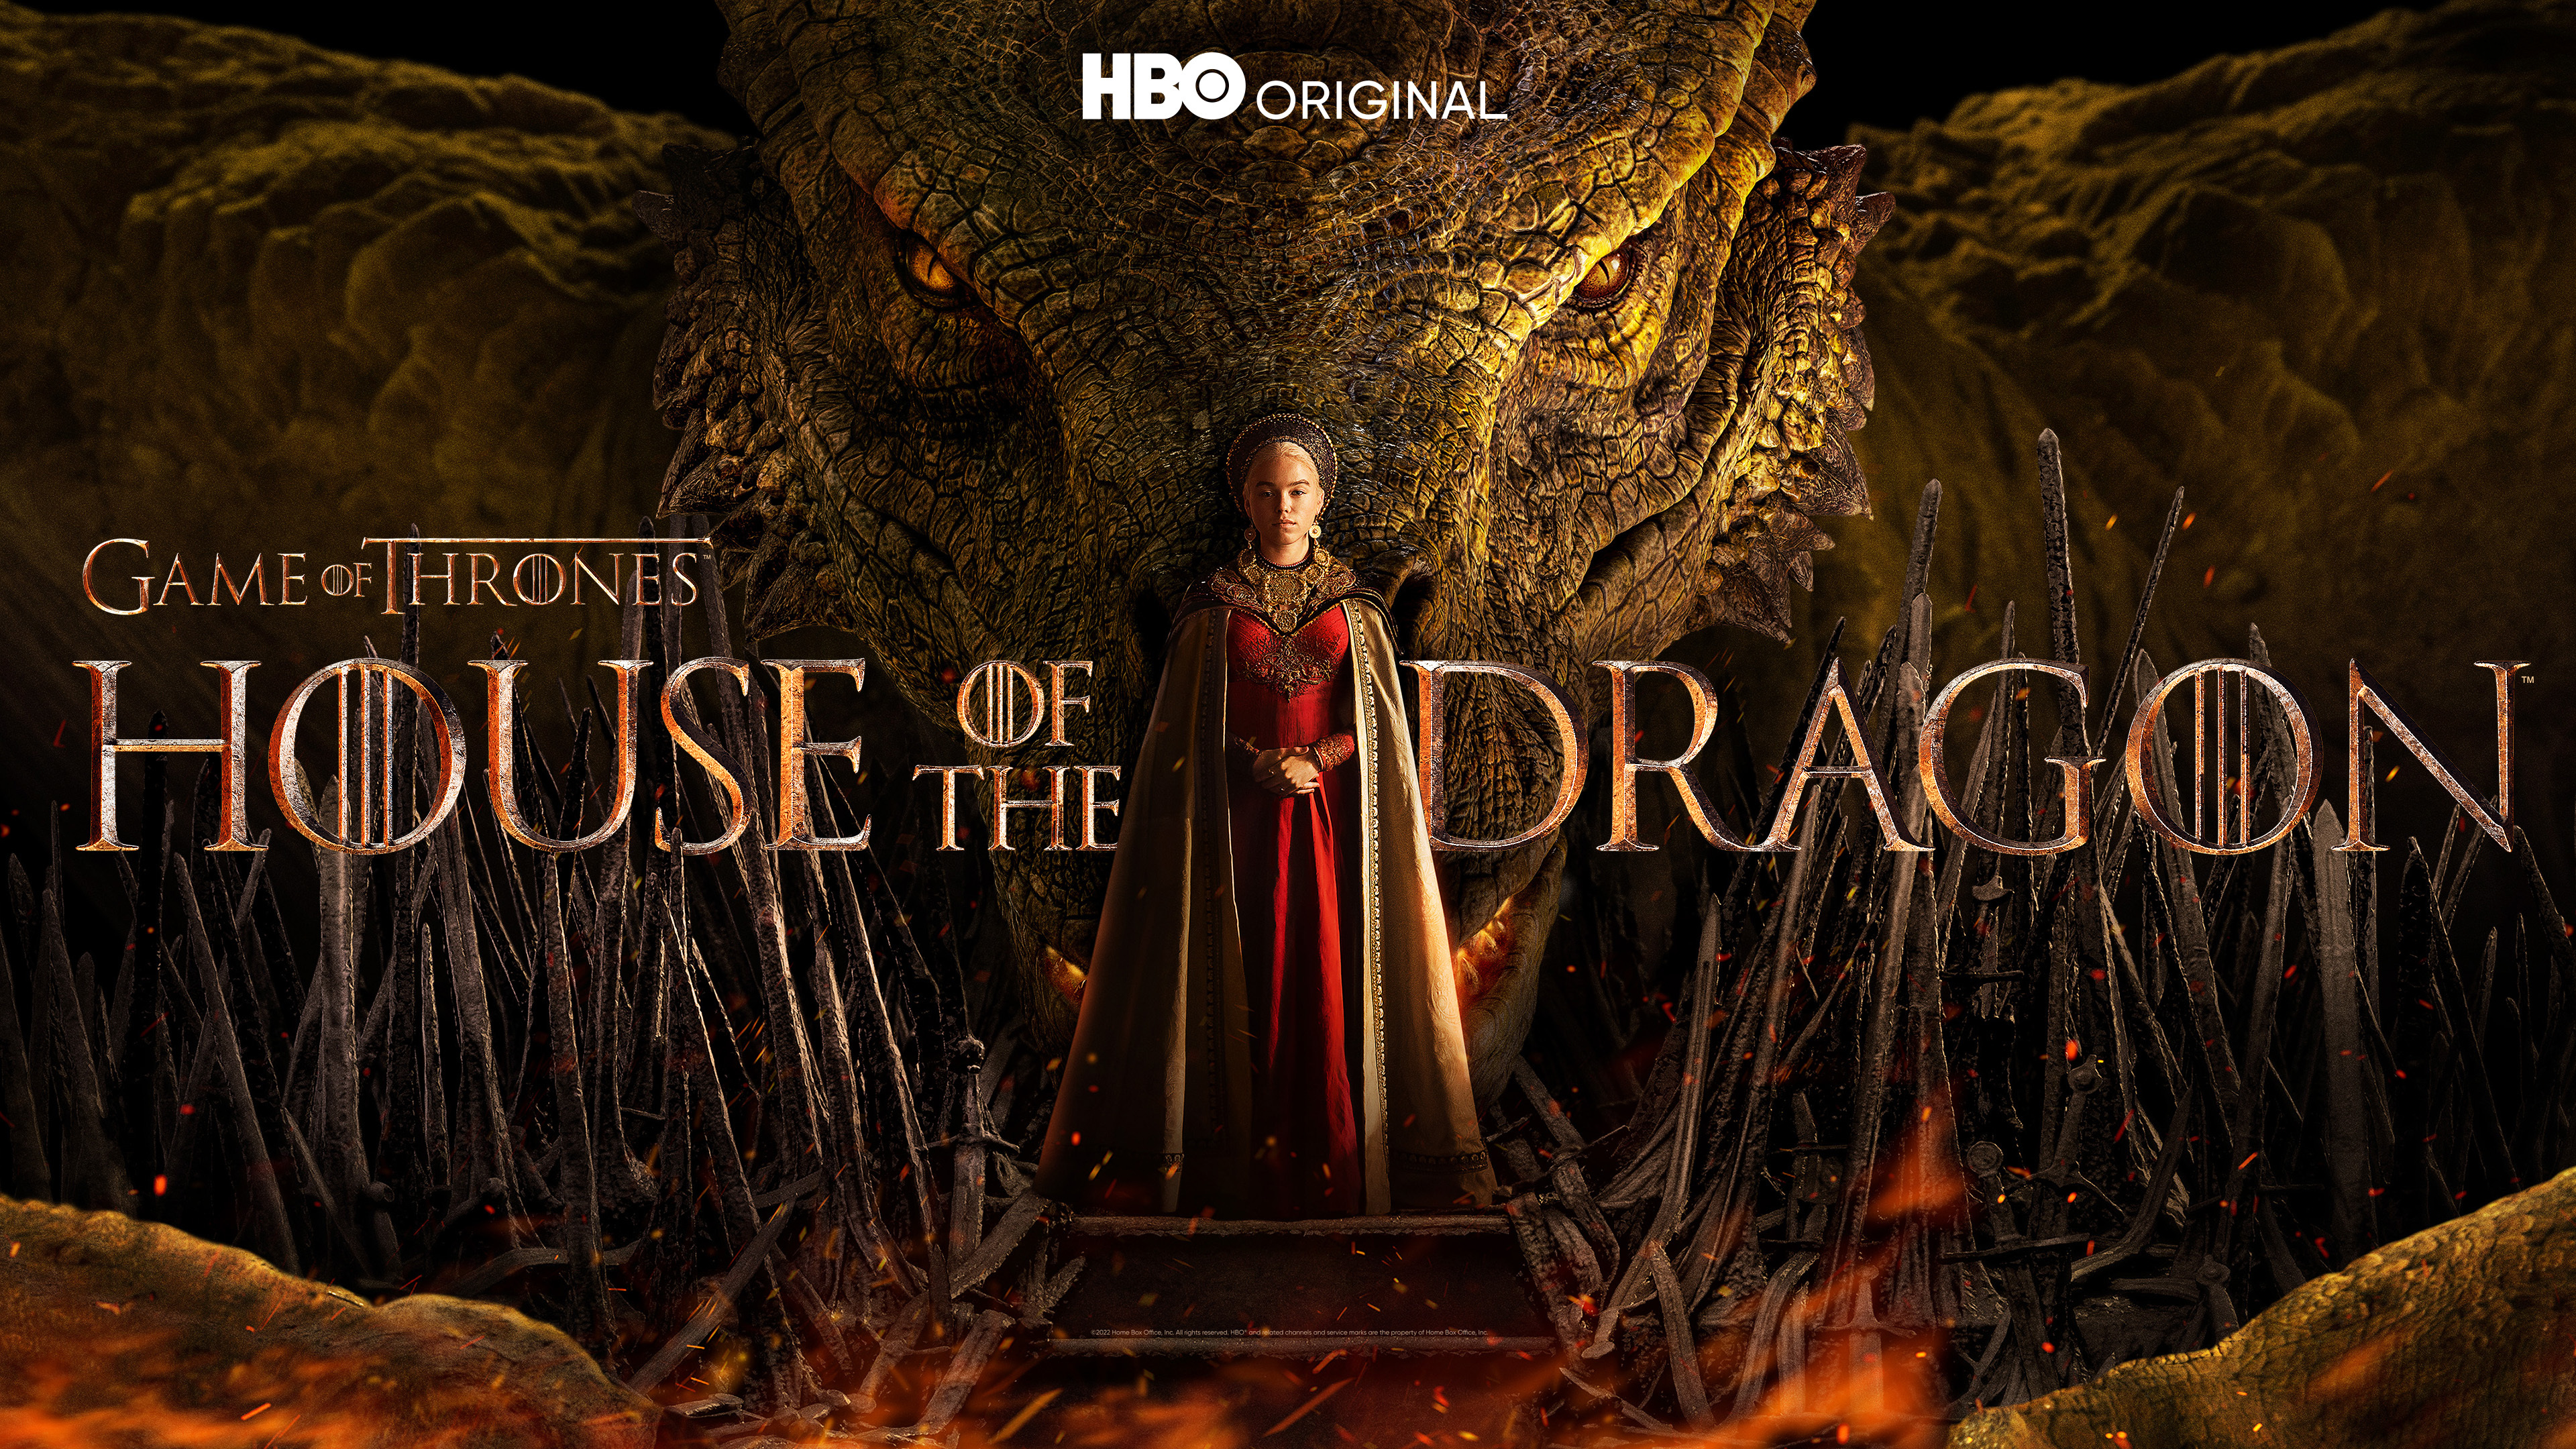 Начались съемки второго сезона «Дома Дракона». Когда он выйдет?